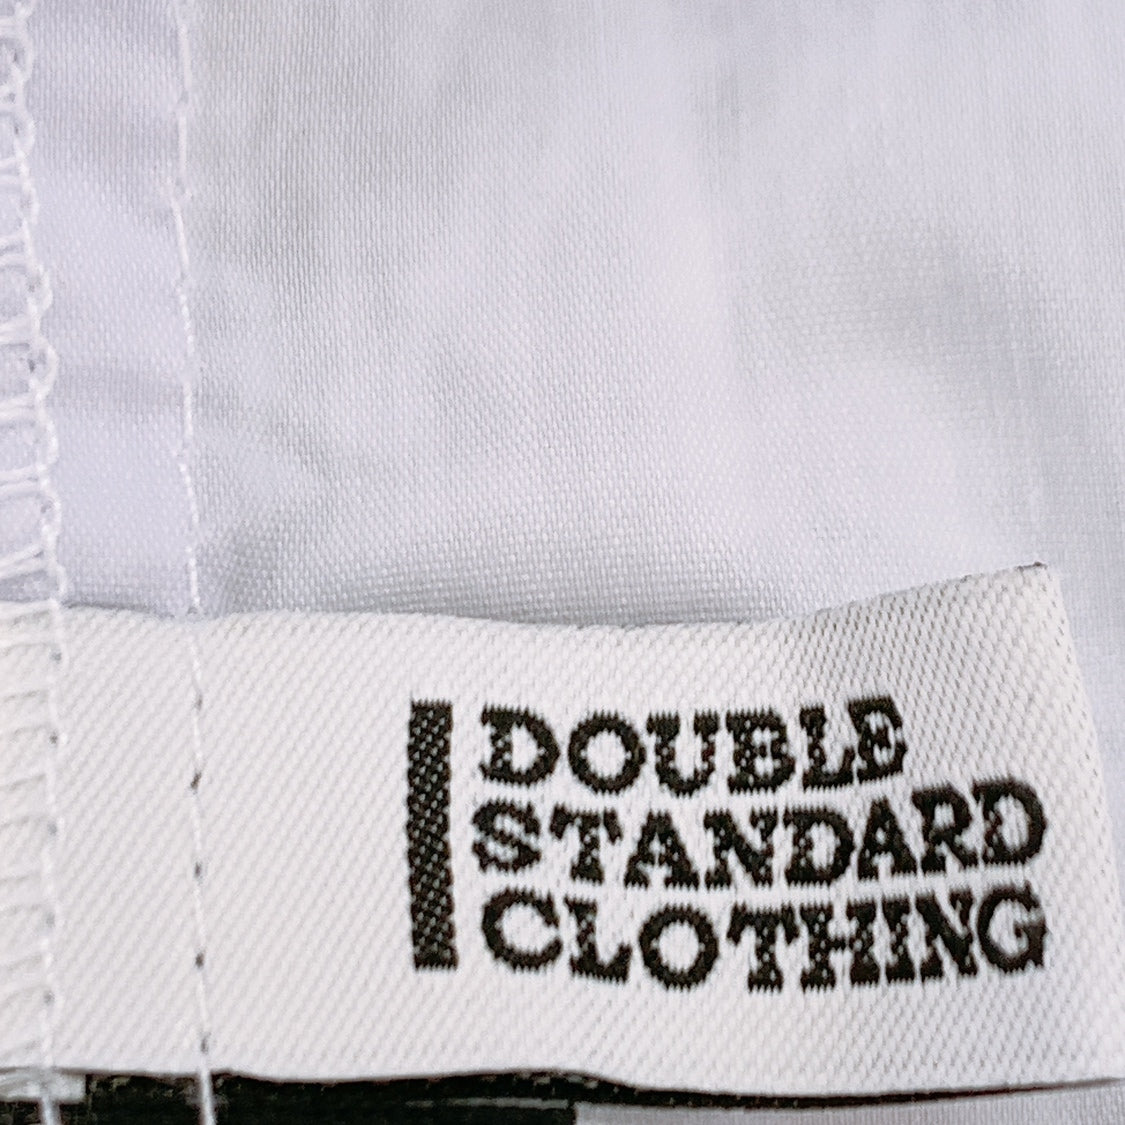 レディースM 38 DOUBLE STANDARD CLOTHING ノースリーブシャツ トップス 白 ホワイト Vネック ダブルスタンタードクロージング 【12789】